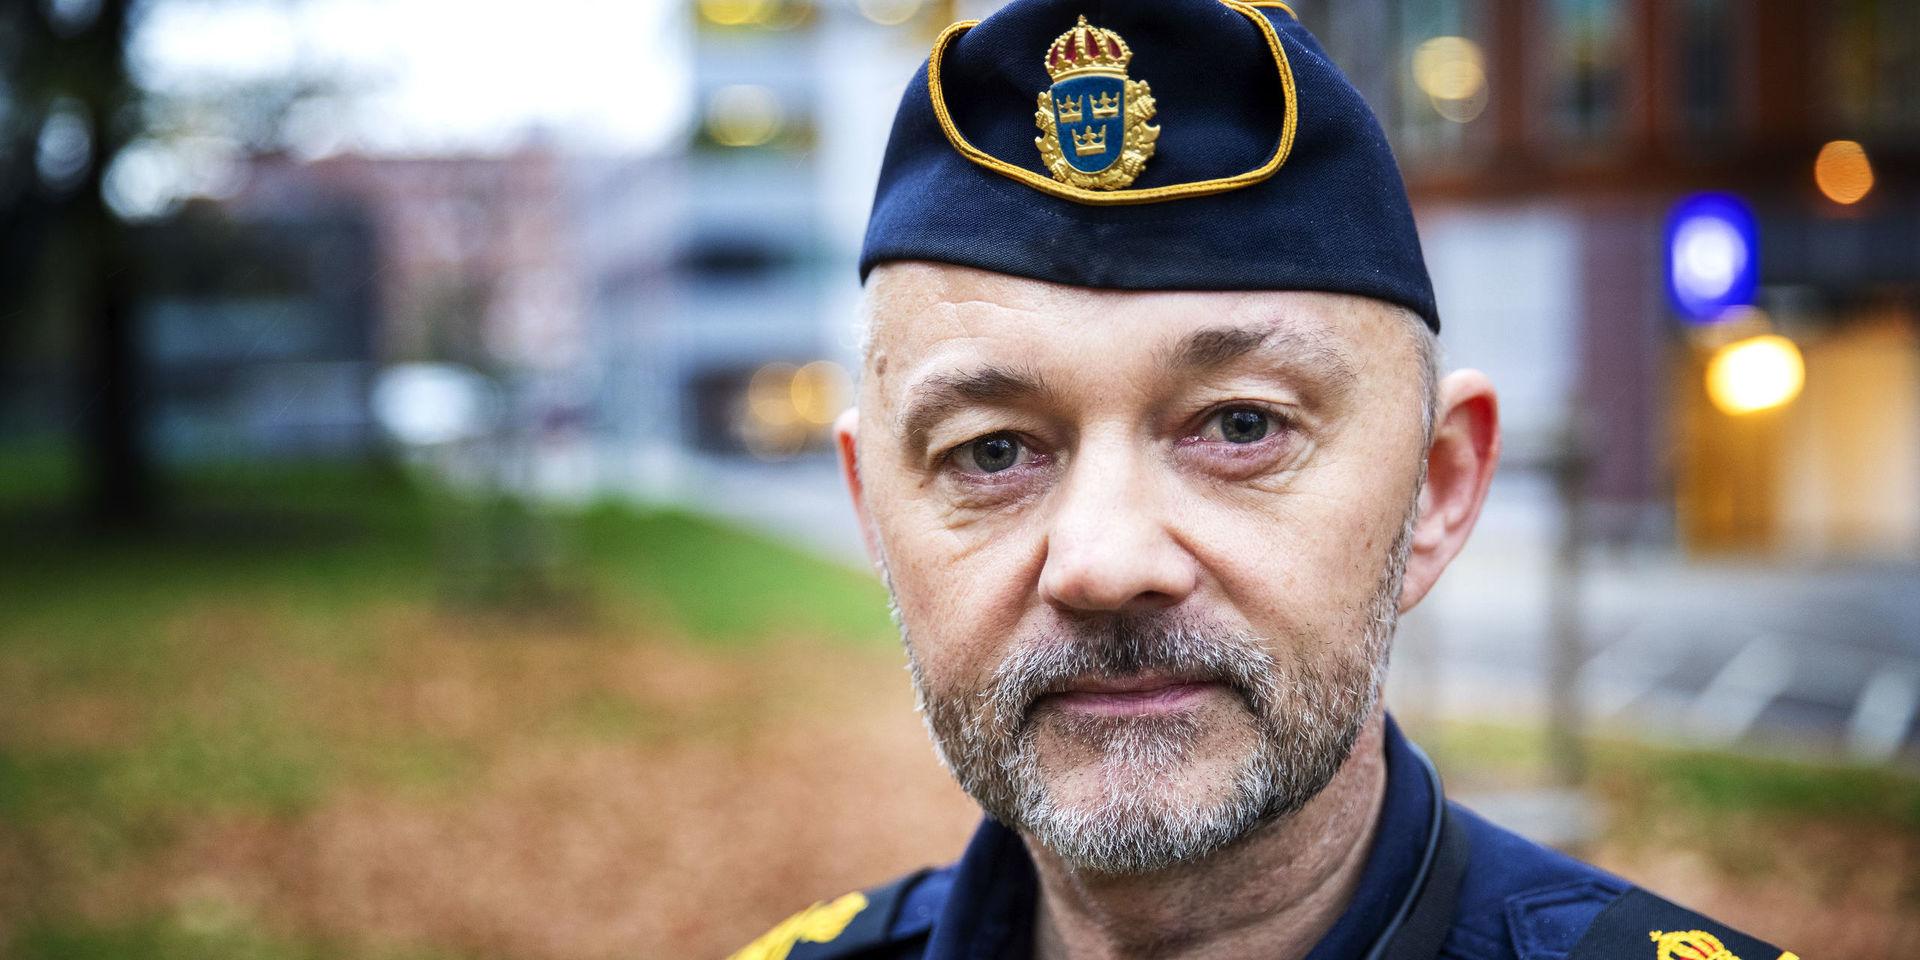 Polisen tvingas sätta in allt större resurser som rör larm om självmordsförsök i Göteborg. &quot;Det här är en akut situation som handlar om att rädda liv. Då sätts stora samhälleliga resurser in&quot;, säger Håkan Lidberg som är chef Regionledningscentralen.